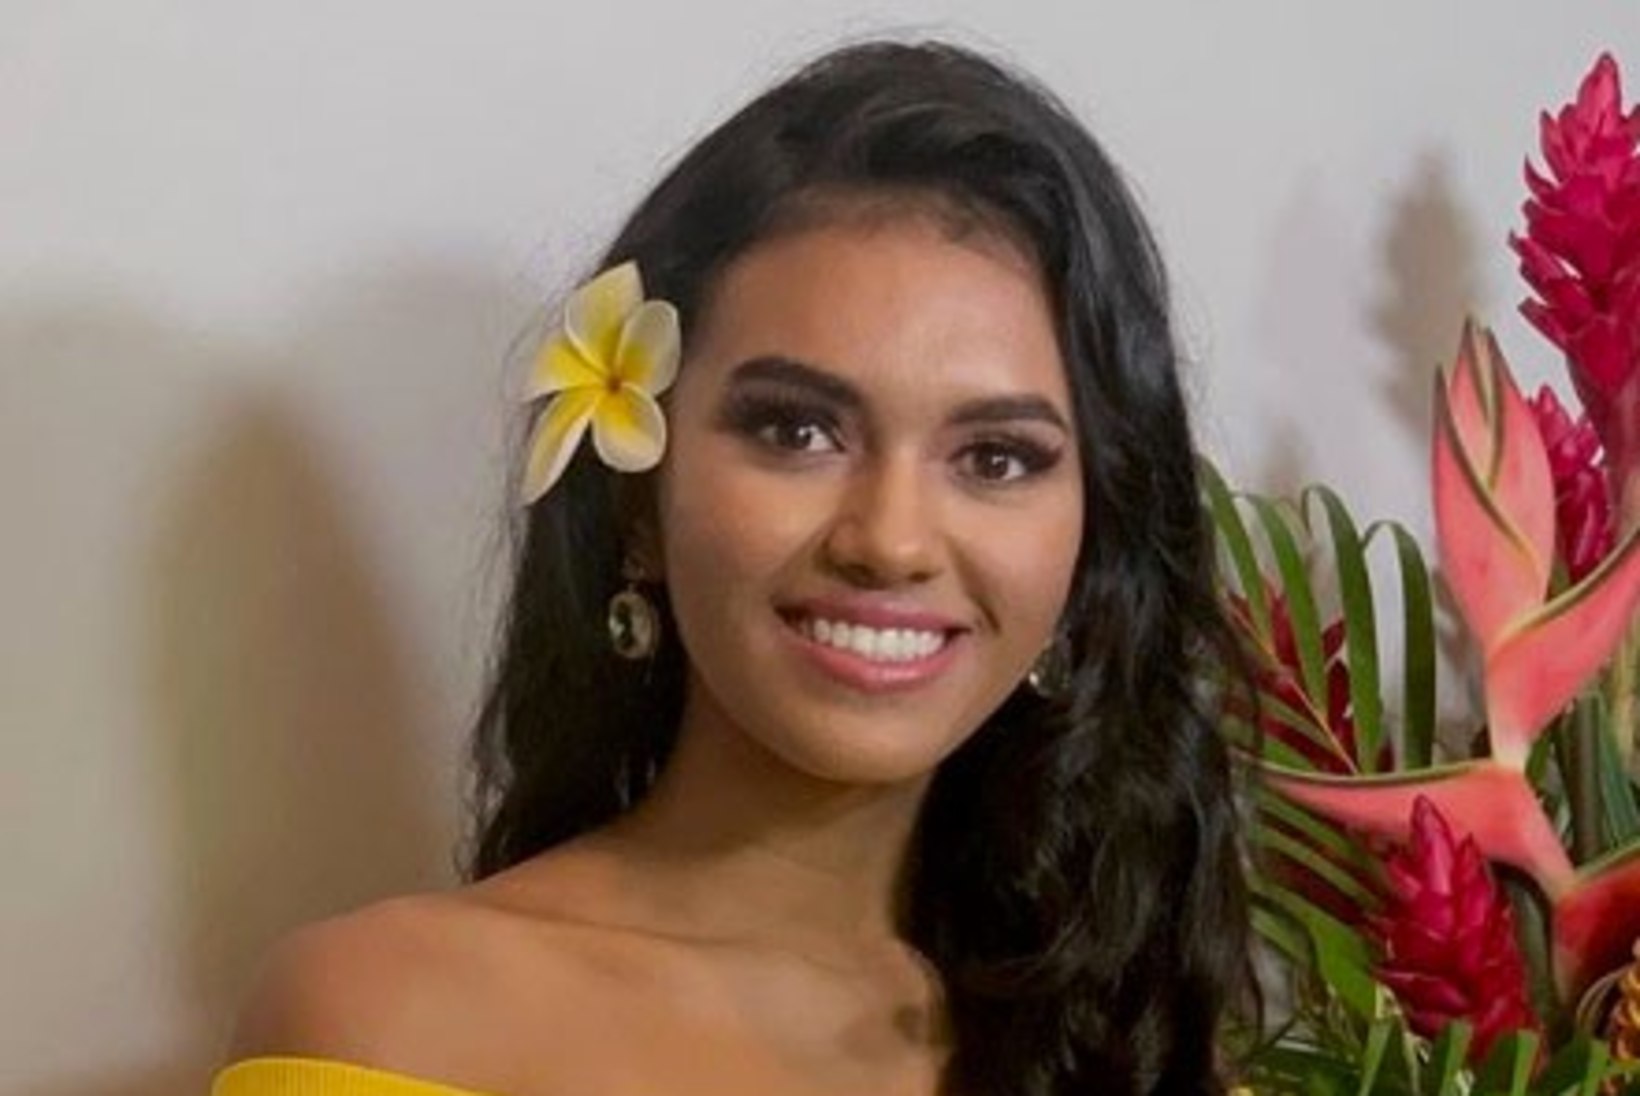 USA kauneimaks teismeliseks krooniti 18aastane Hawaii neiu